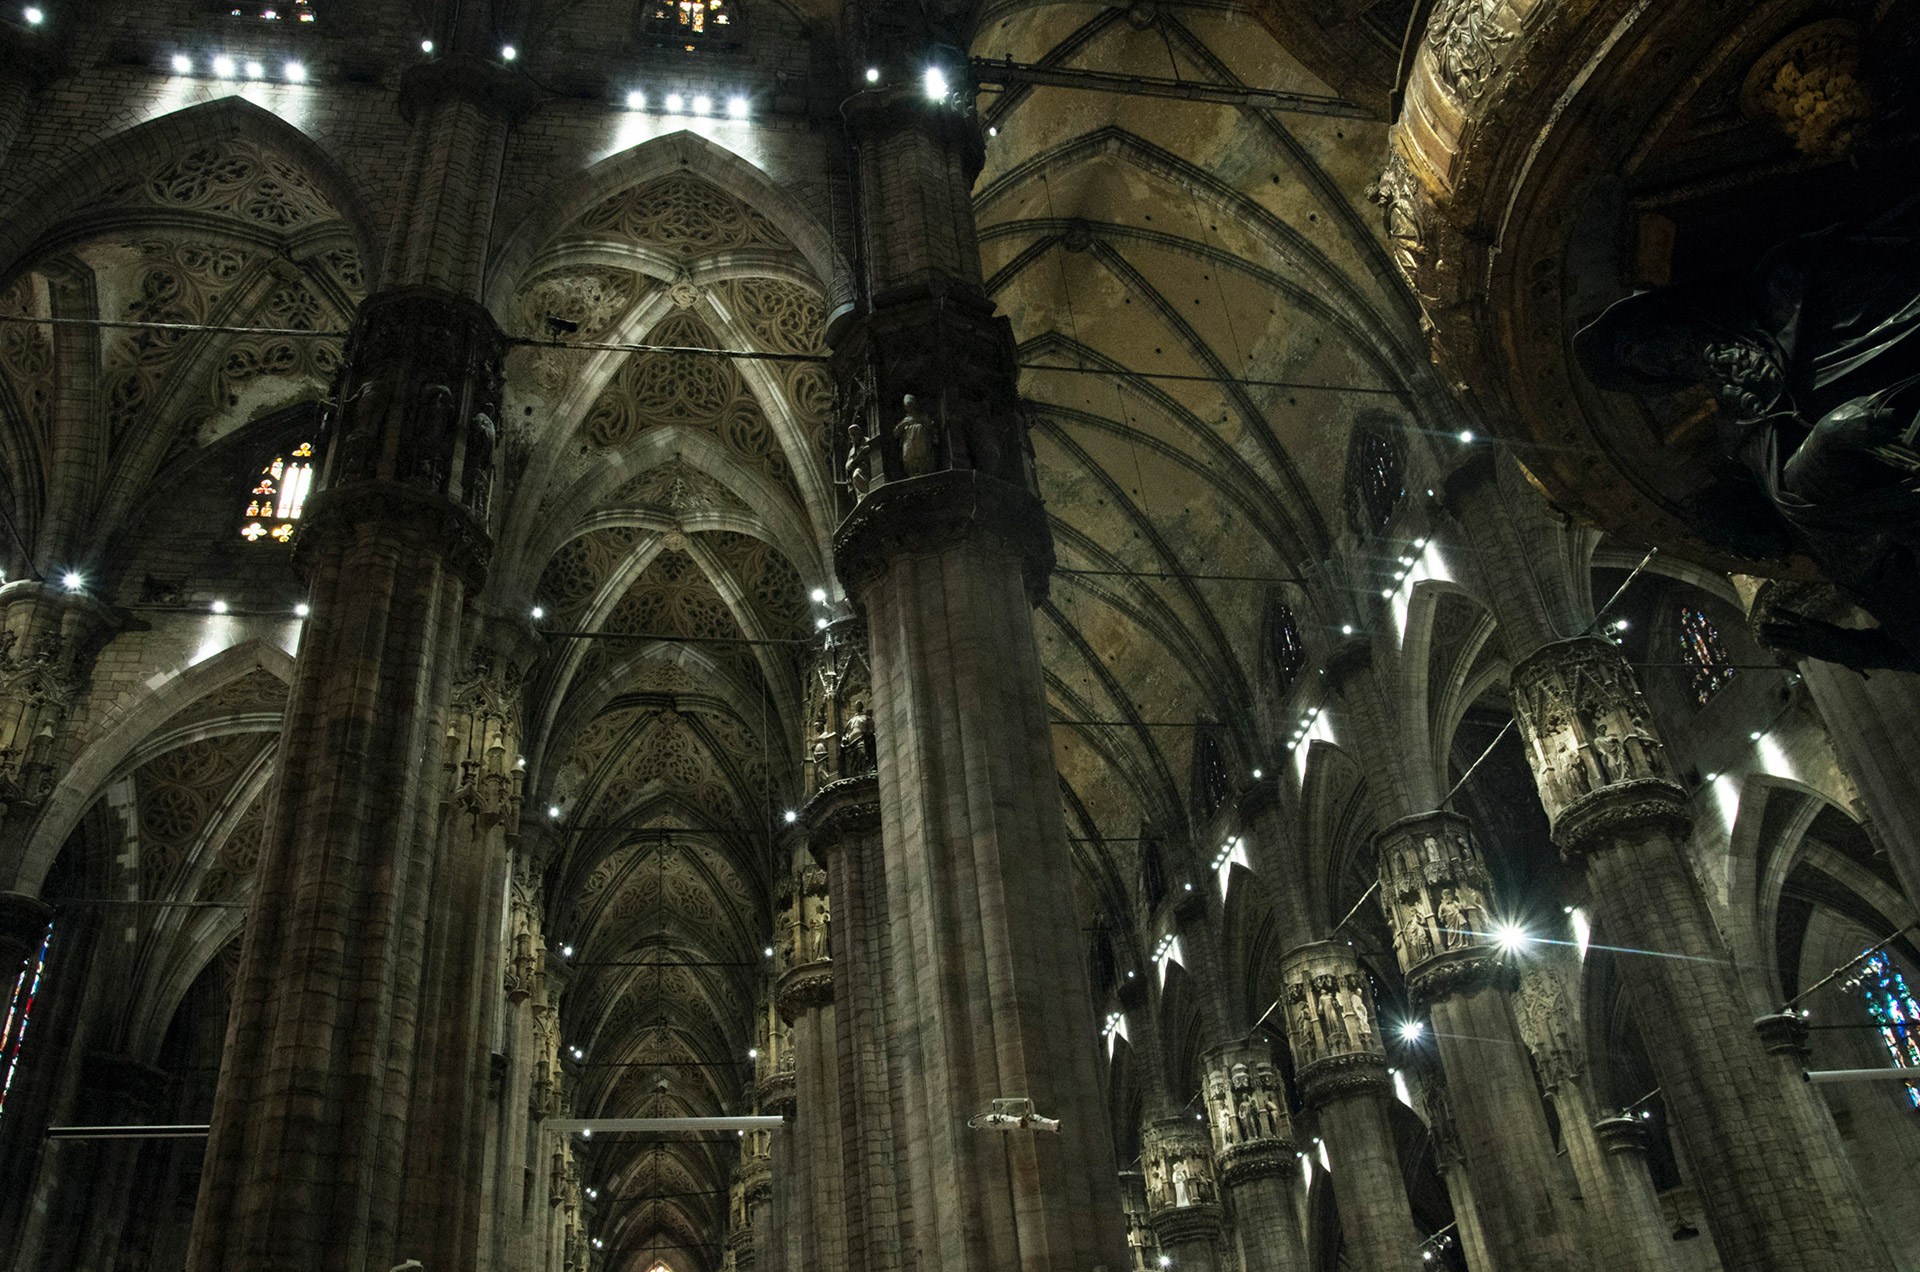 Mediolan, katedra w Mediolanie, gotycka katedra, sklepienie gotyckie, średniowiecze, podróże, podróże po Europie, fotografia Monika Turska